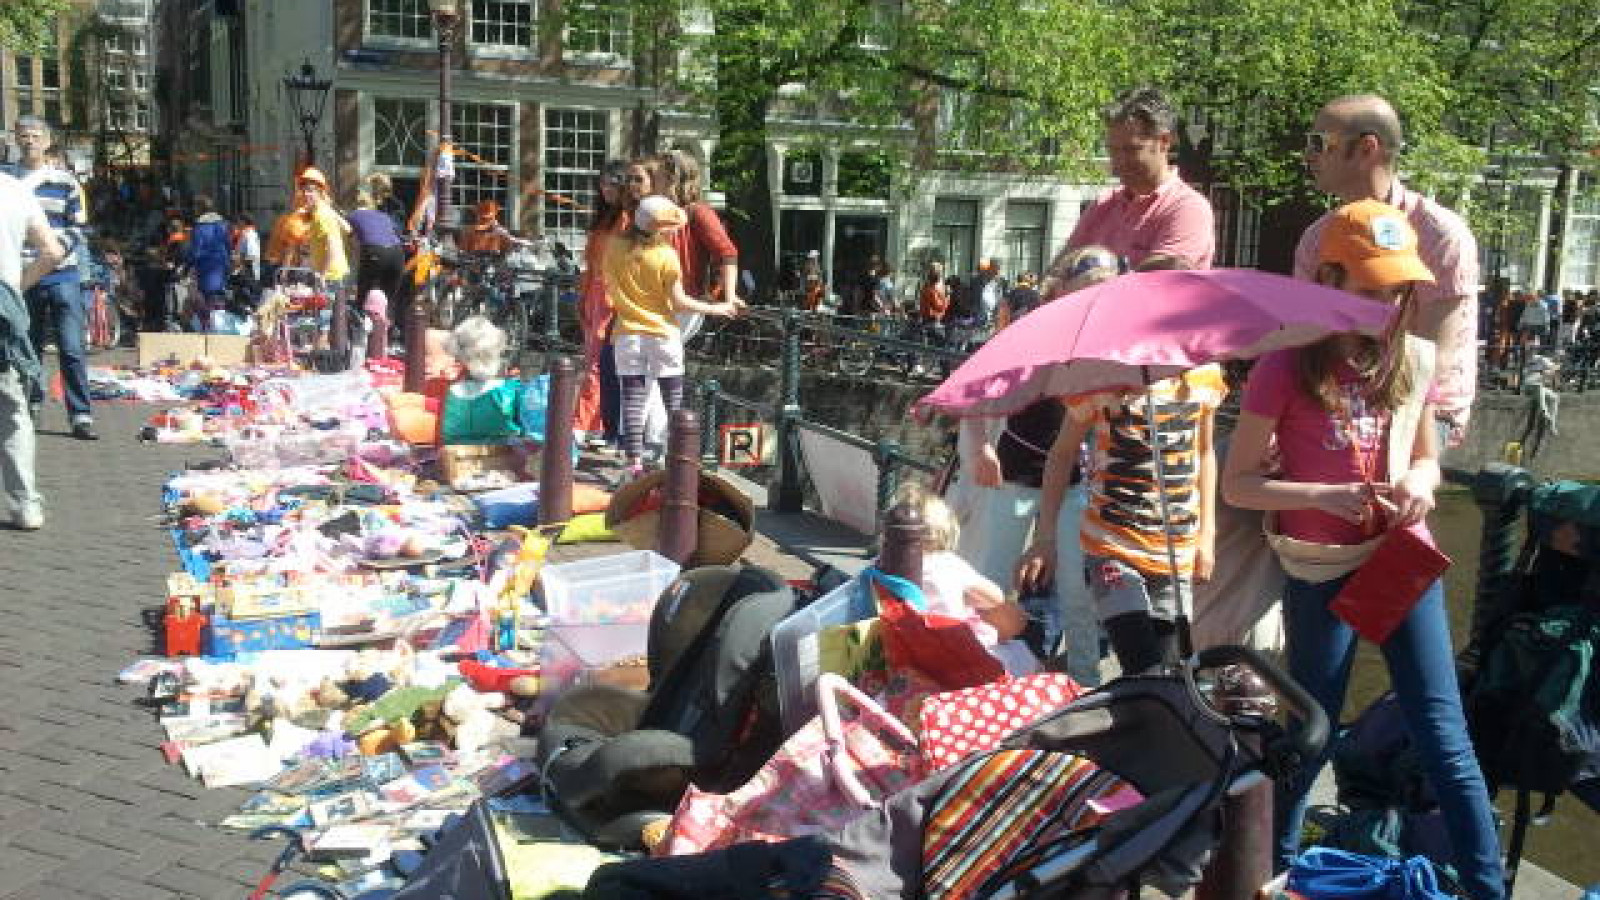 Amsterdam Koninginnedag